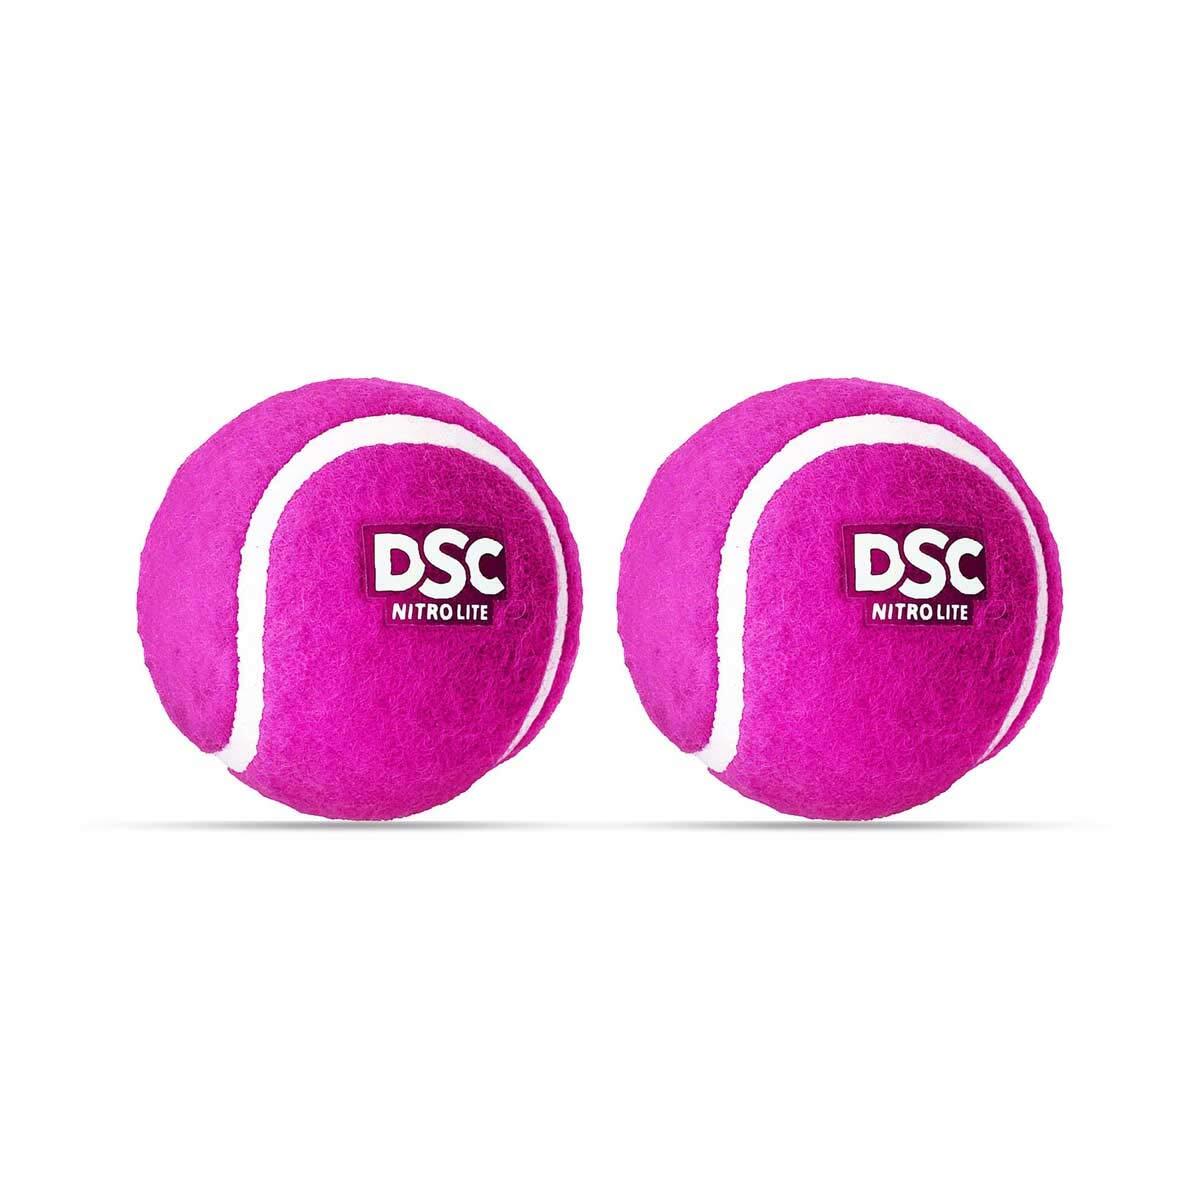 DSC DSC Nitro Light Rubber Tennis Ball- Pack of 2